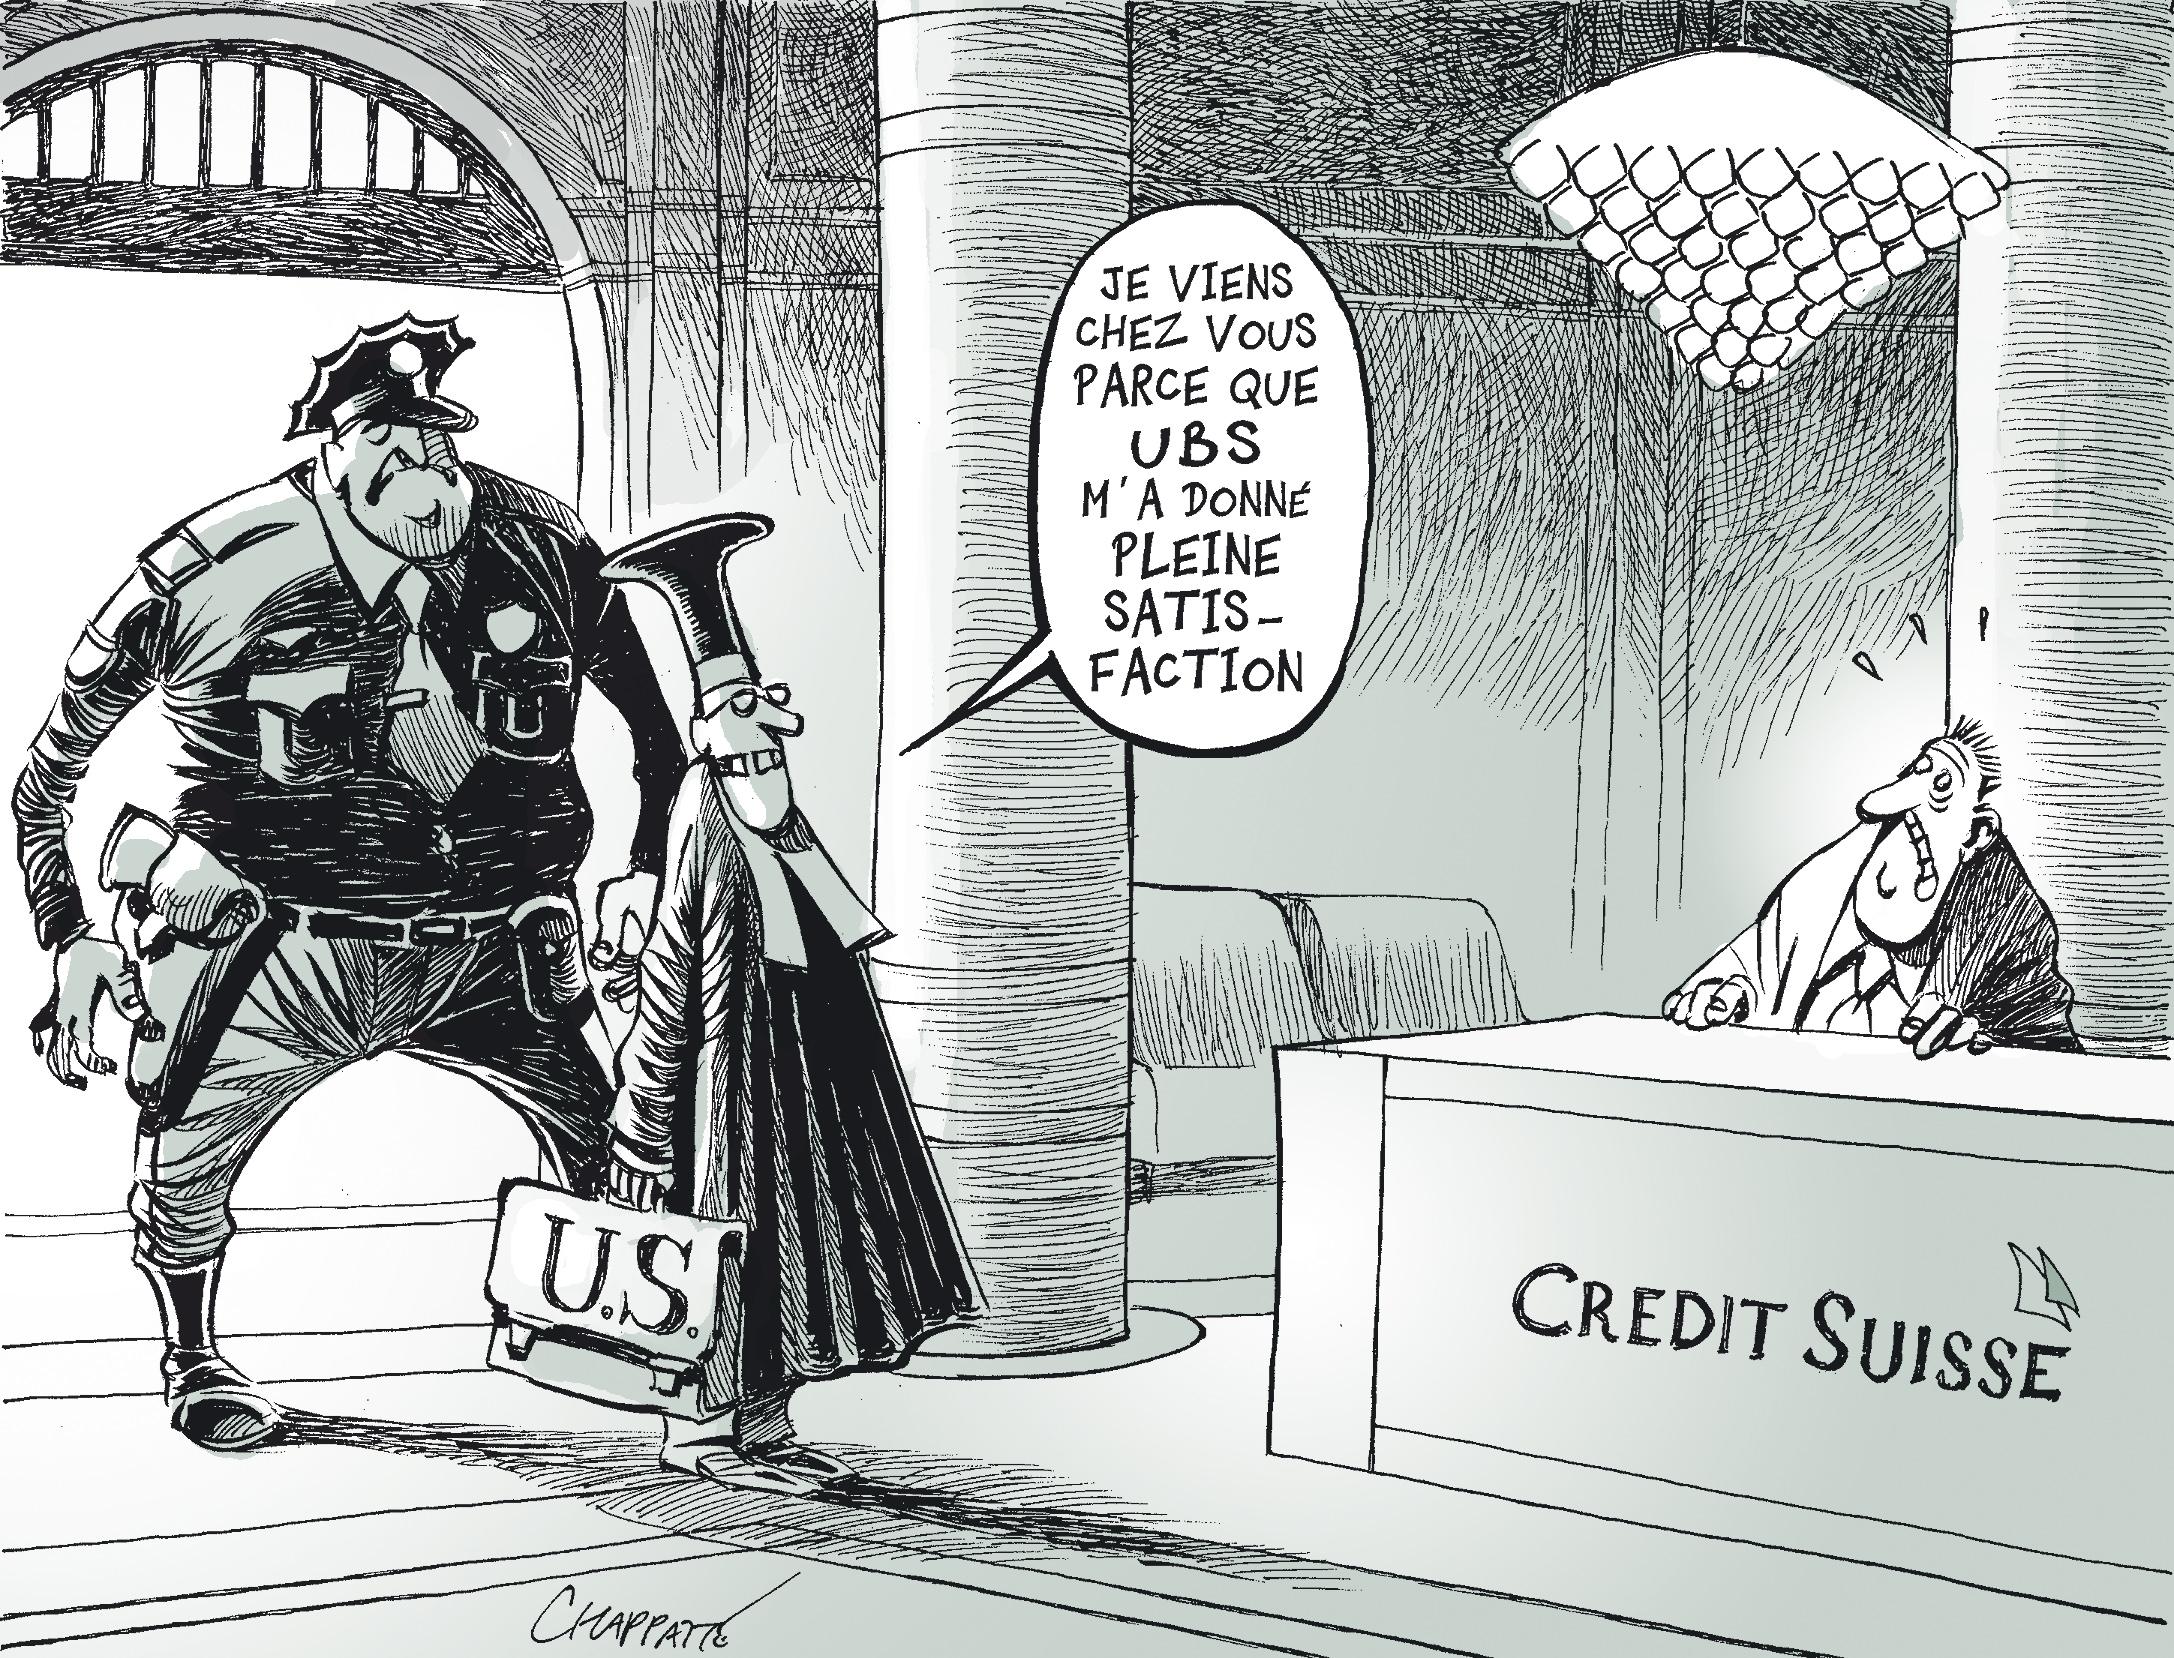 Le fisc U.S. s'en prend au Crédit Suisse